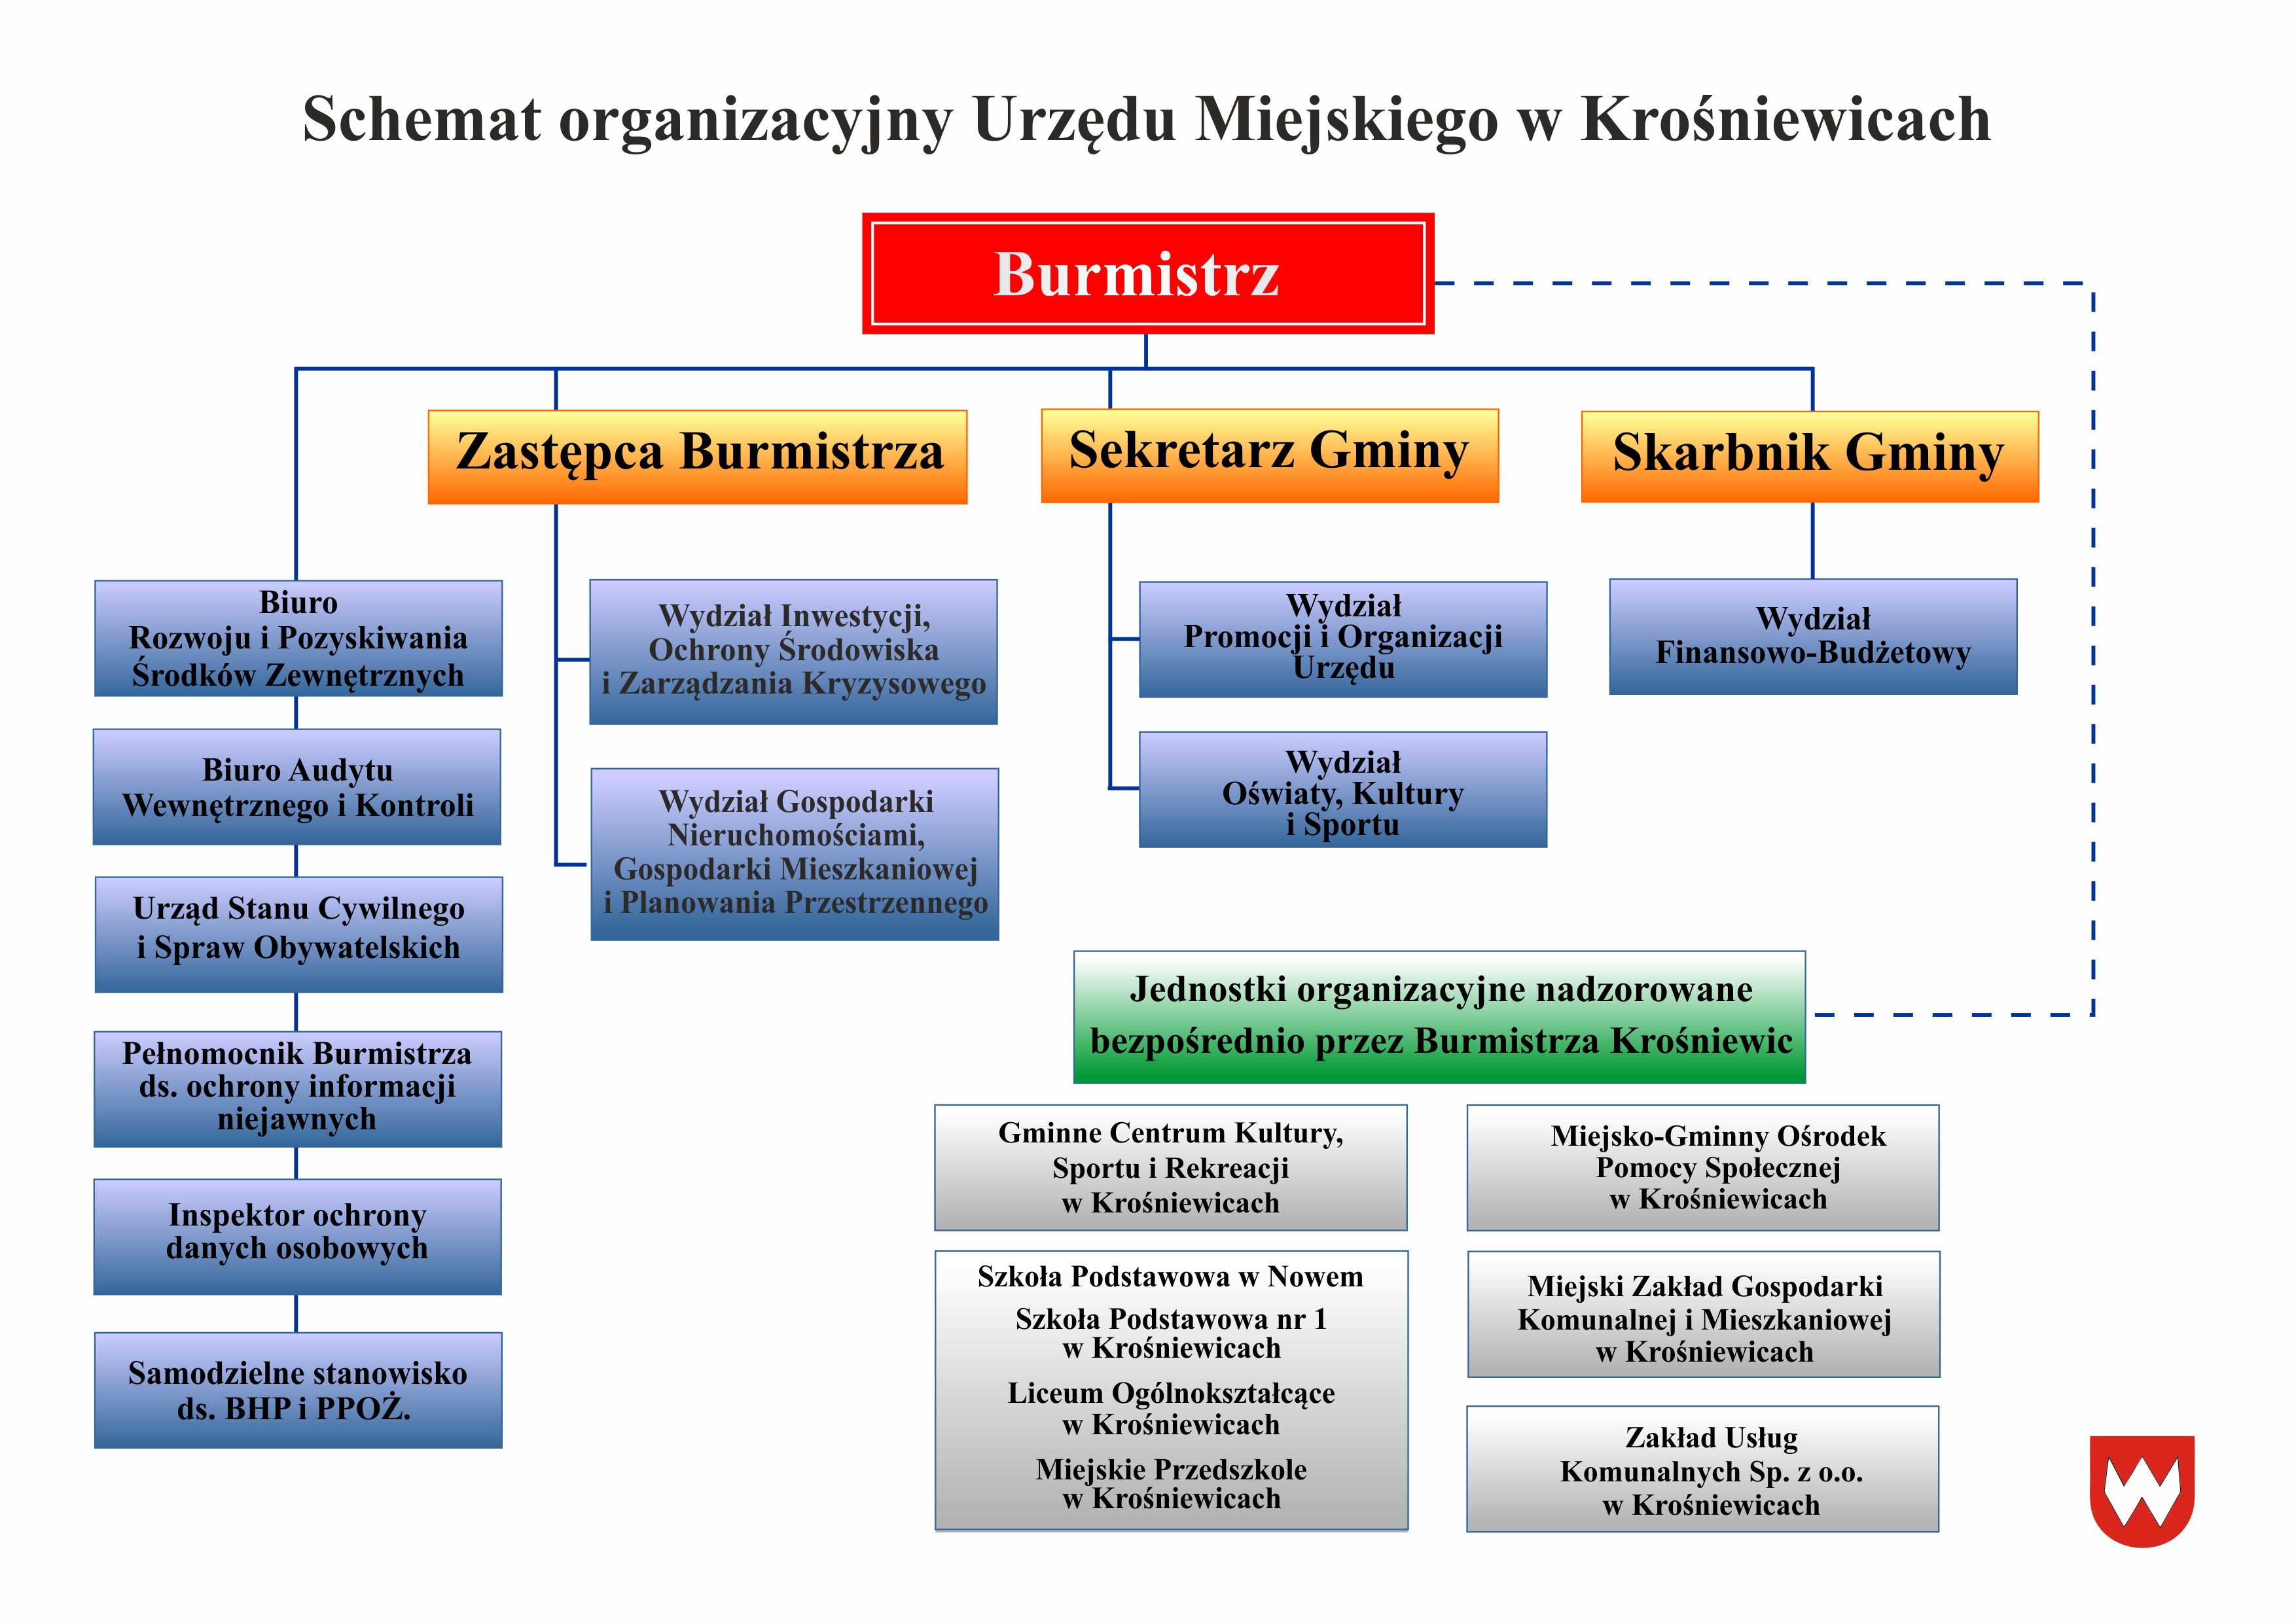 Schemat Organizacyjny UM Krośniewice 1 września 2021.jpg (1.77 MB)